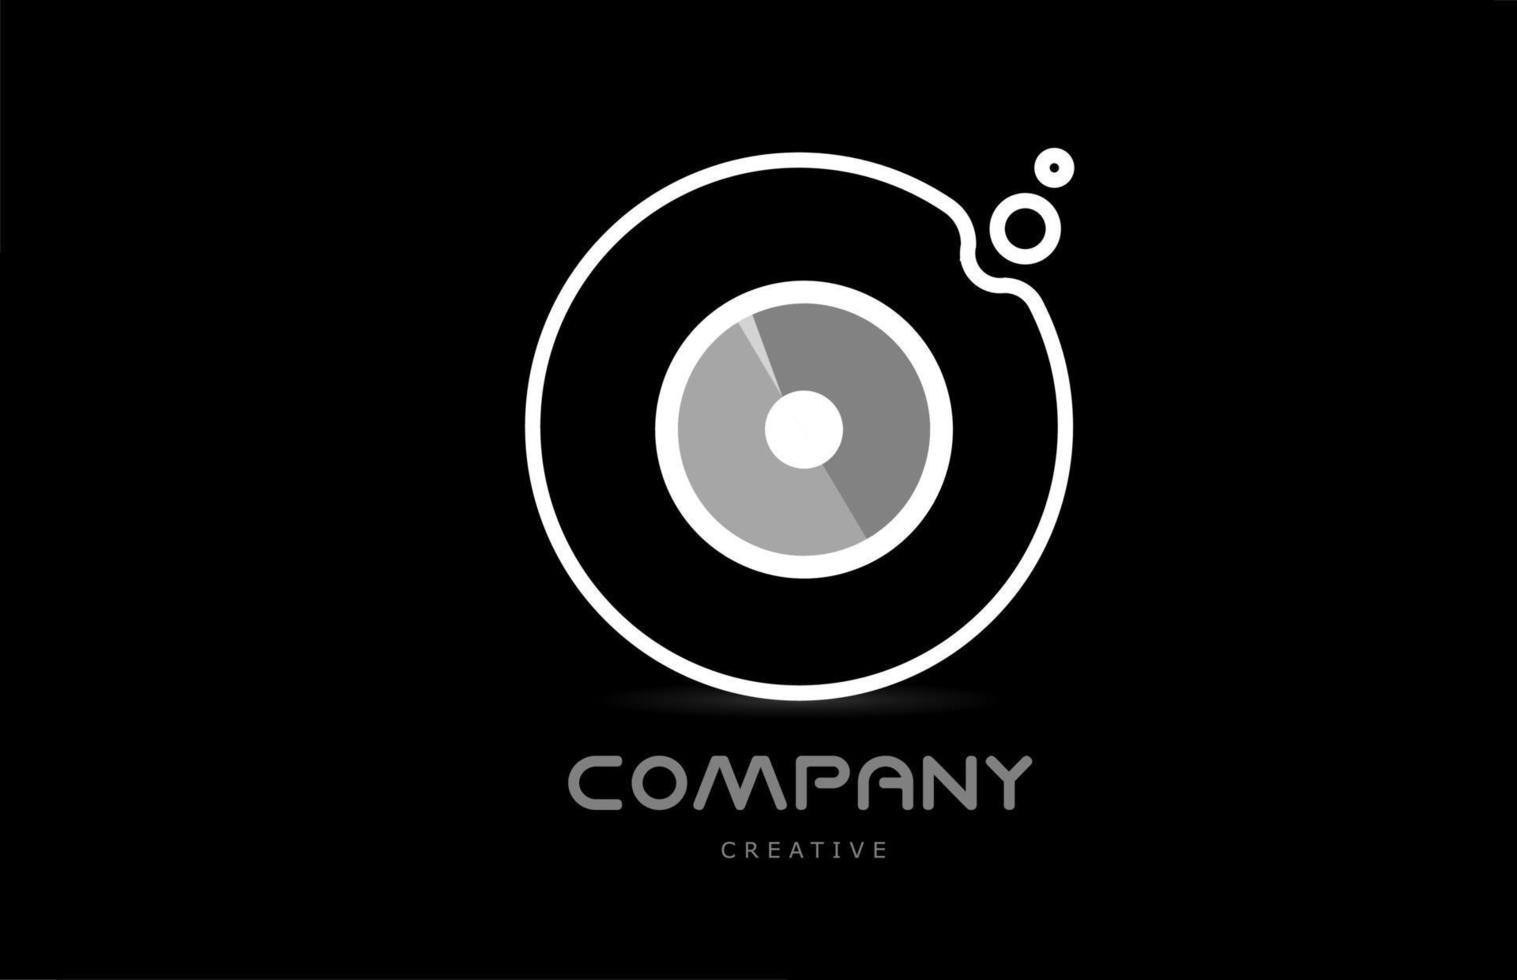 blanco y negro o icono de logotipo de letra del alfabeto geométrico con círculo. plantilla creativa para empresa y negocio vector